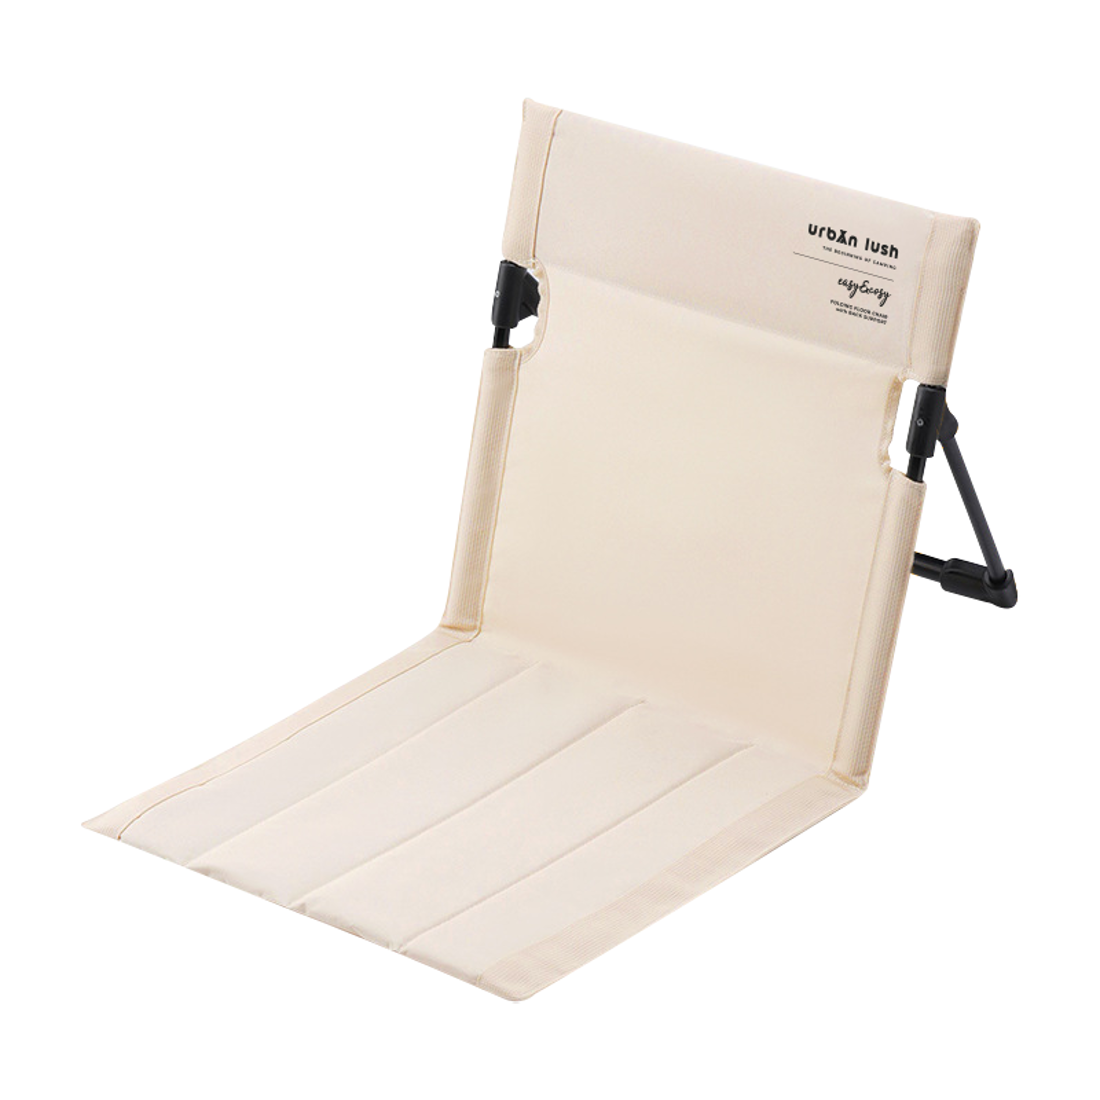 어반러쉬 폴딩 플로어 경량 접이식 폴딩 휴대용 등받이 좌식 의자 - OCmall 에서 판매되는 상품을 확인해 보세요. | 오씨몰 | 데얼스 공식 스토어